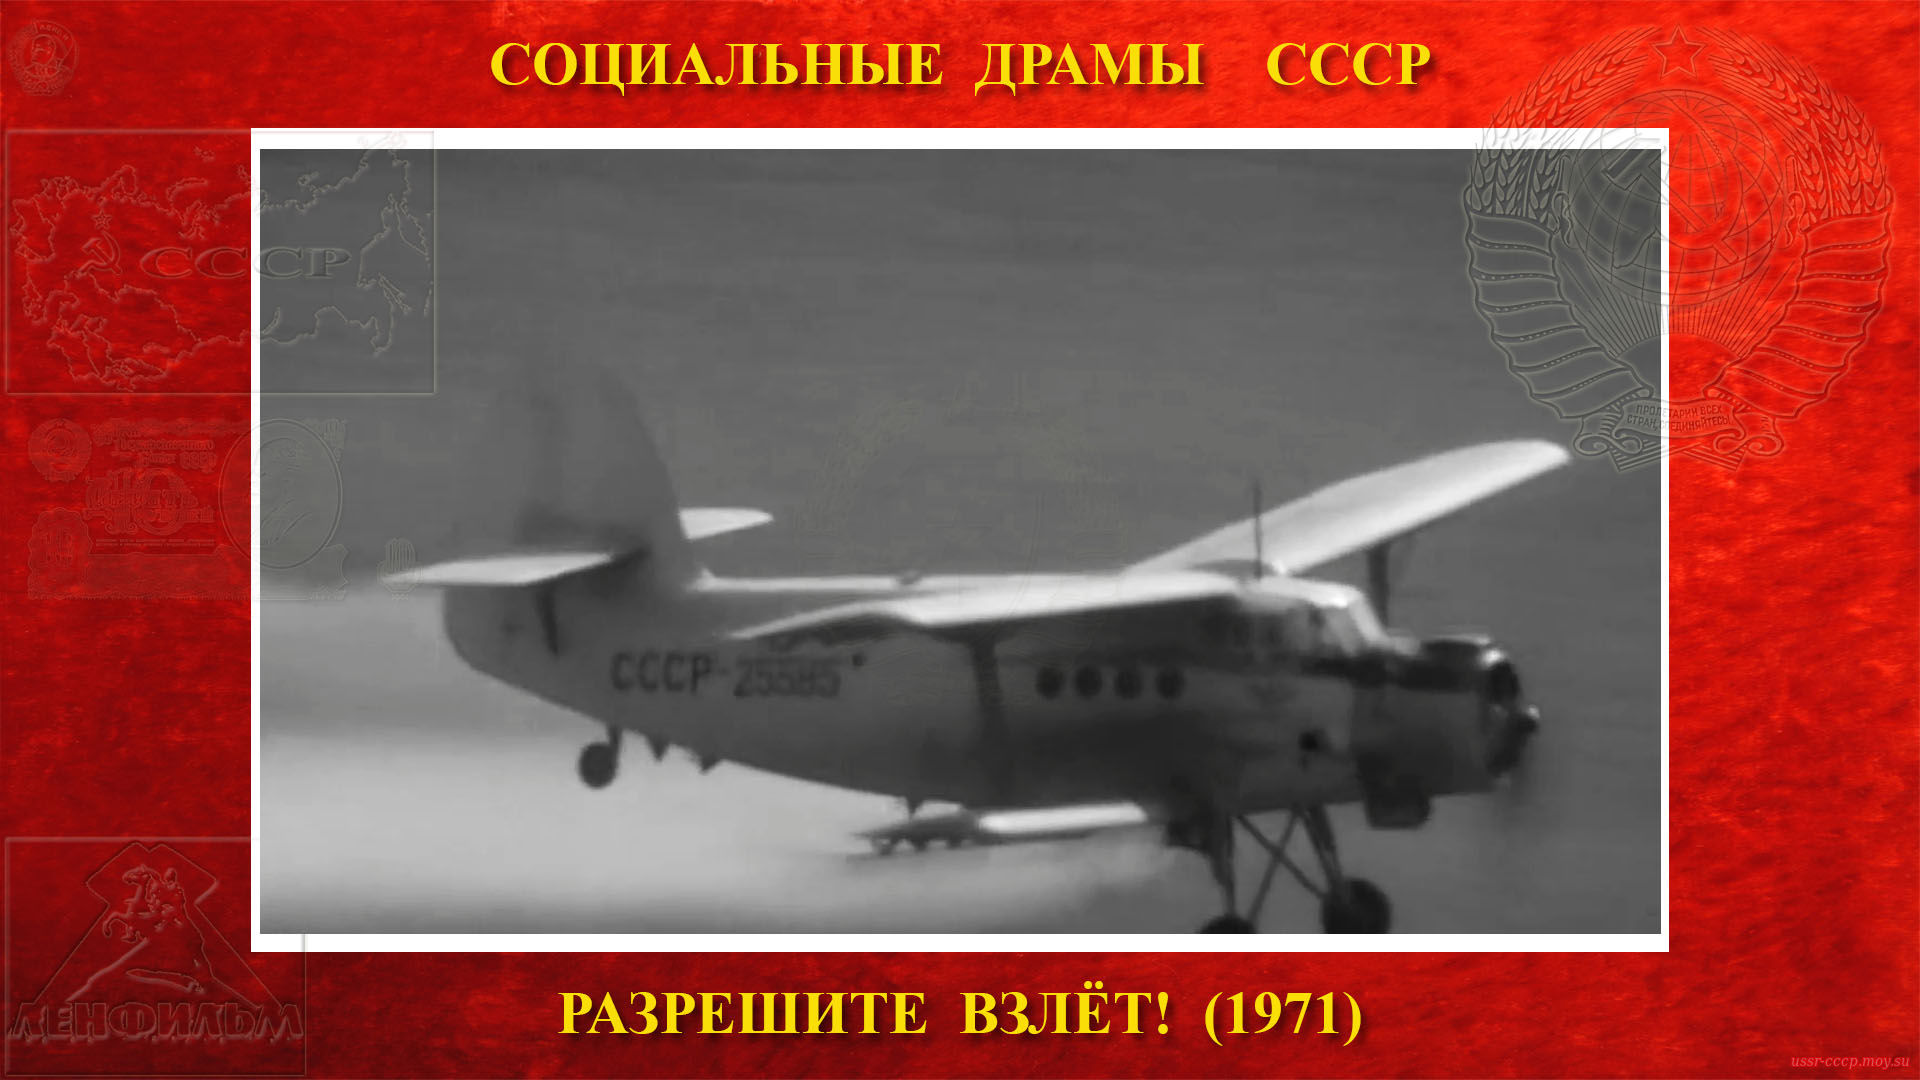 Разрешите ВЗЛЁТ! — У них начинаются постоянные полёты на Ан-2 борт СССР-25585 в Алхимово (распыление химии на поля) взлёт - распыление - посадка